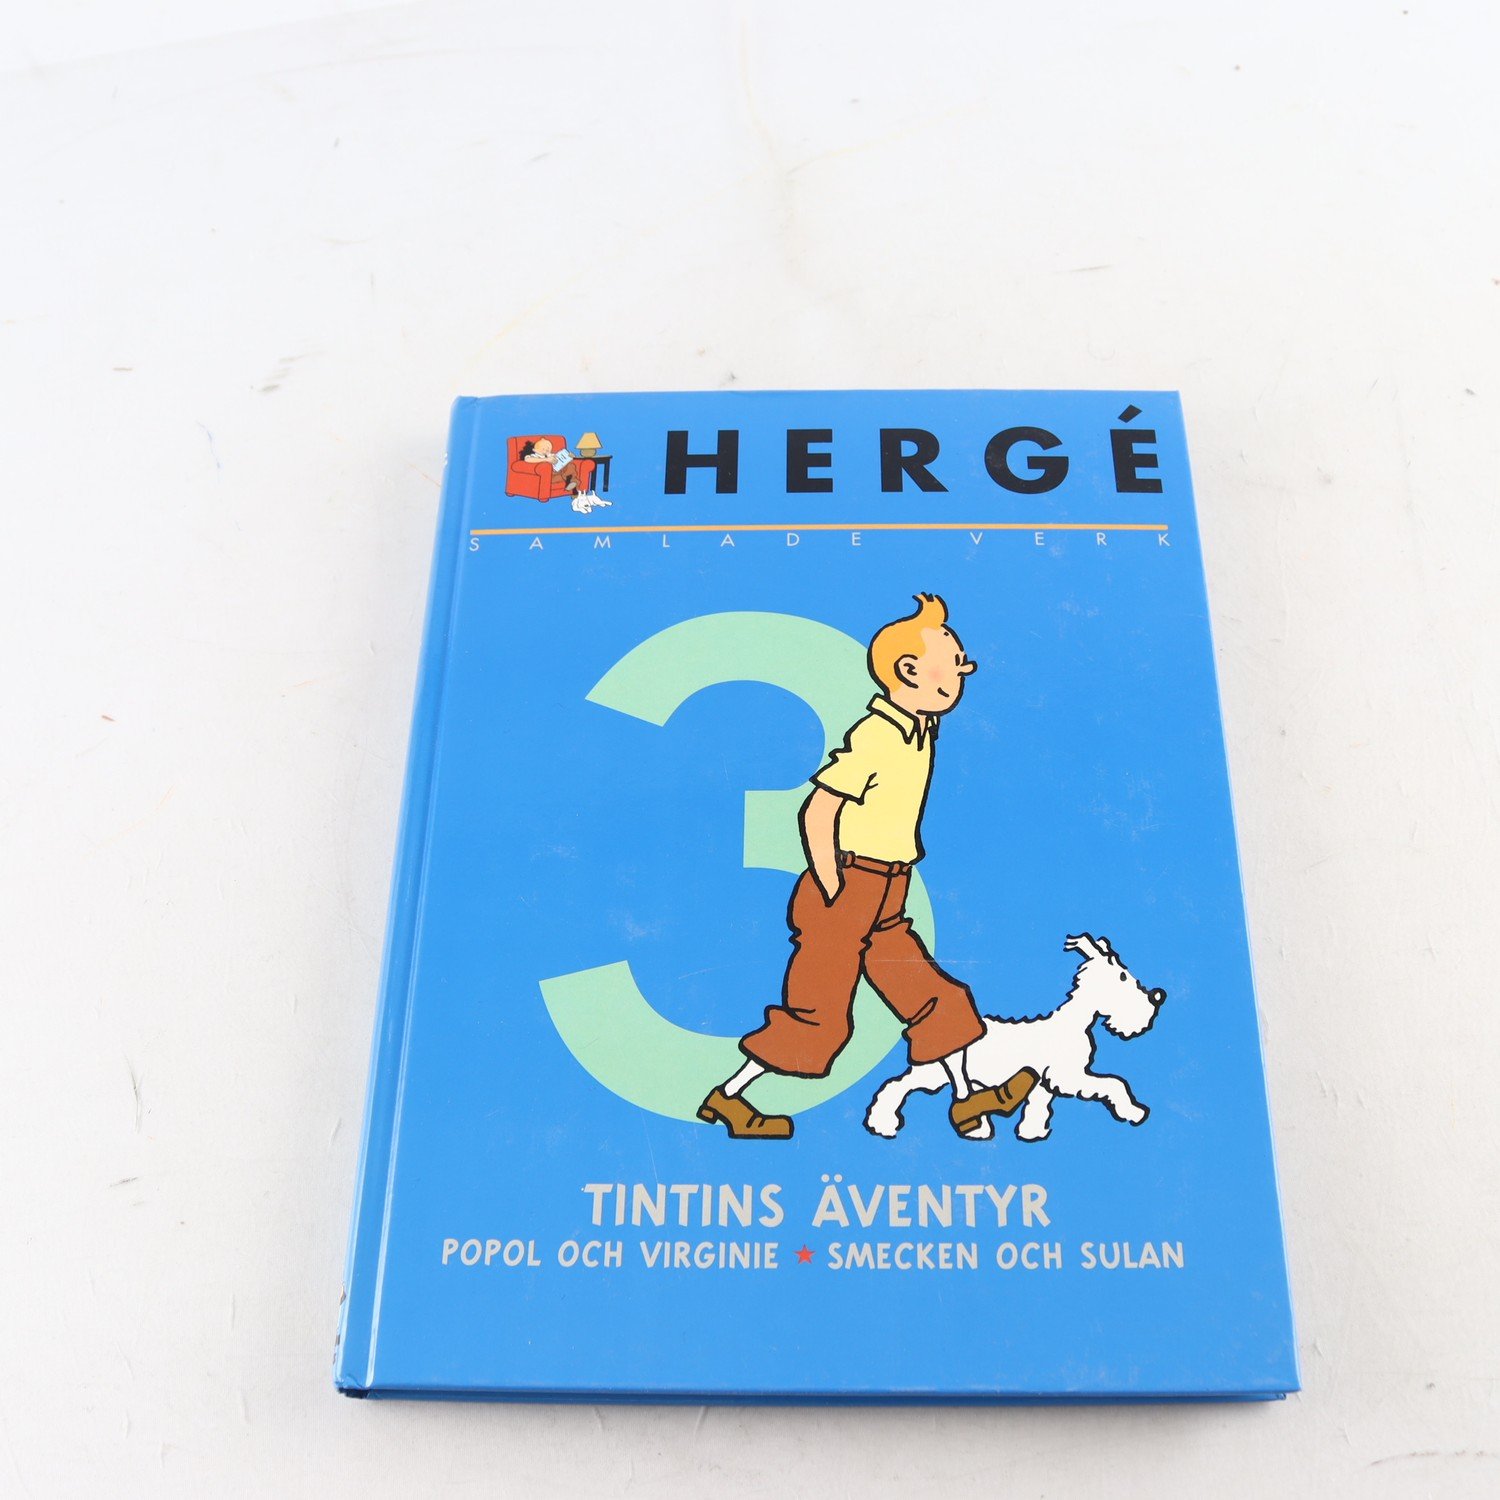 Hergé, Samlade verk, Vol. 3, Tintins äventyr, Popol och Virgine